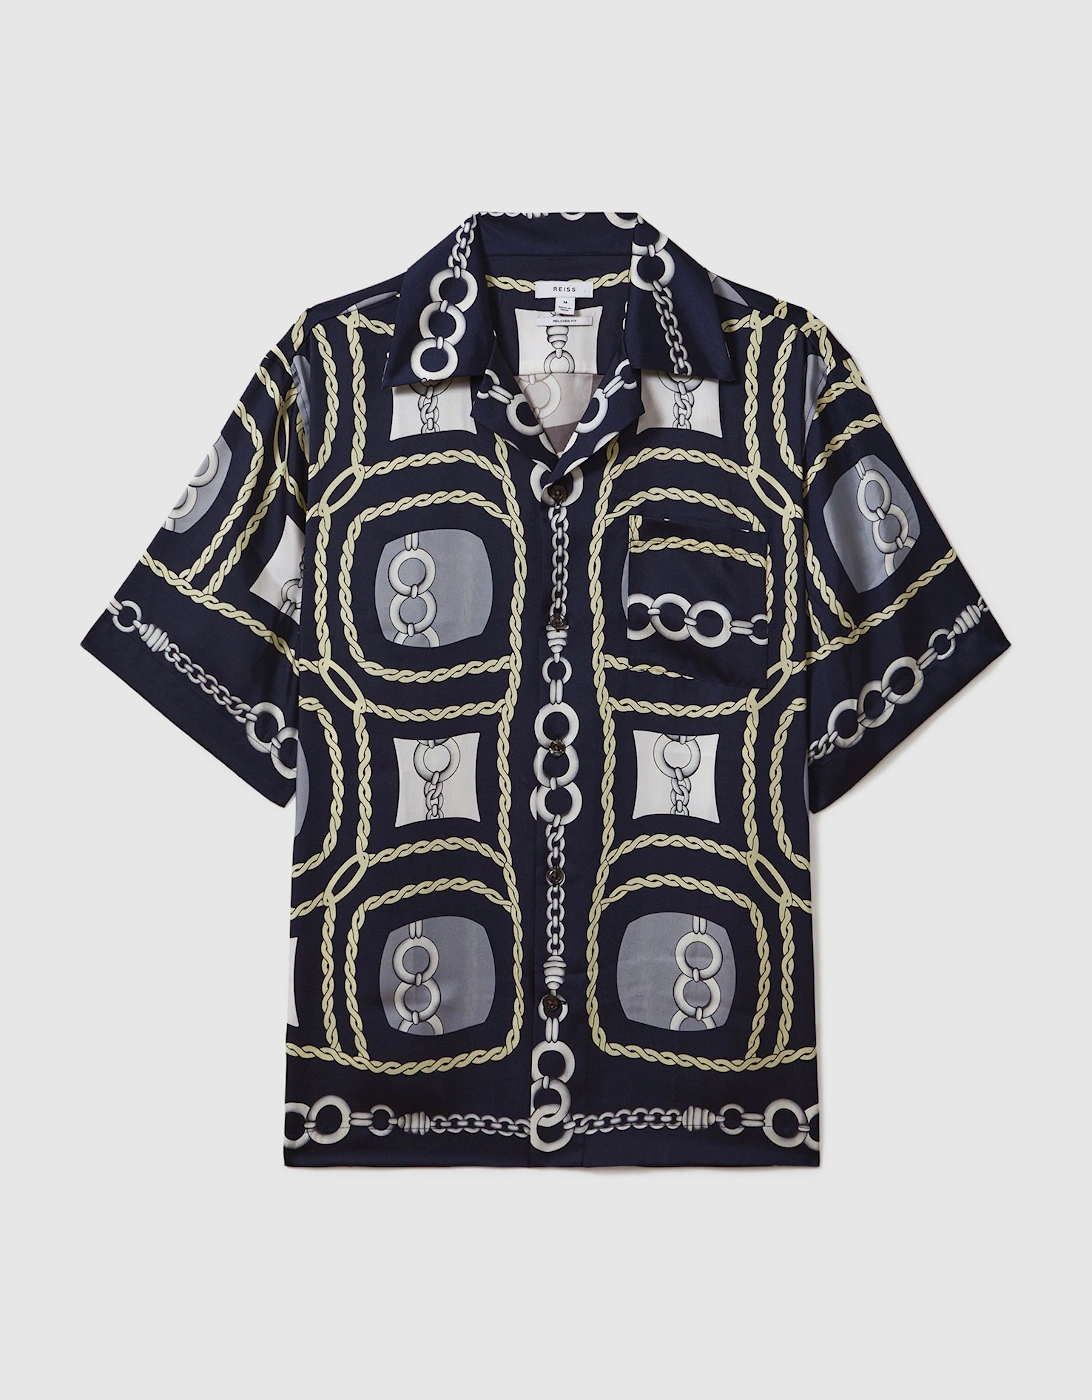 Chain Print Cuban Collar Shirt, 2 of 1